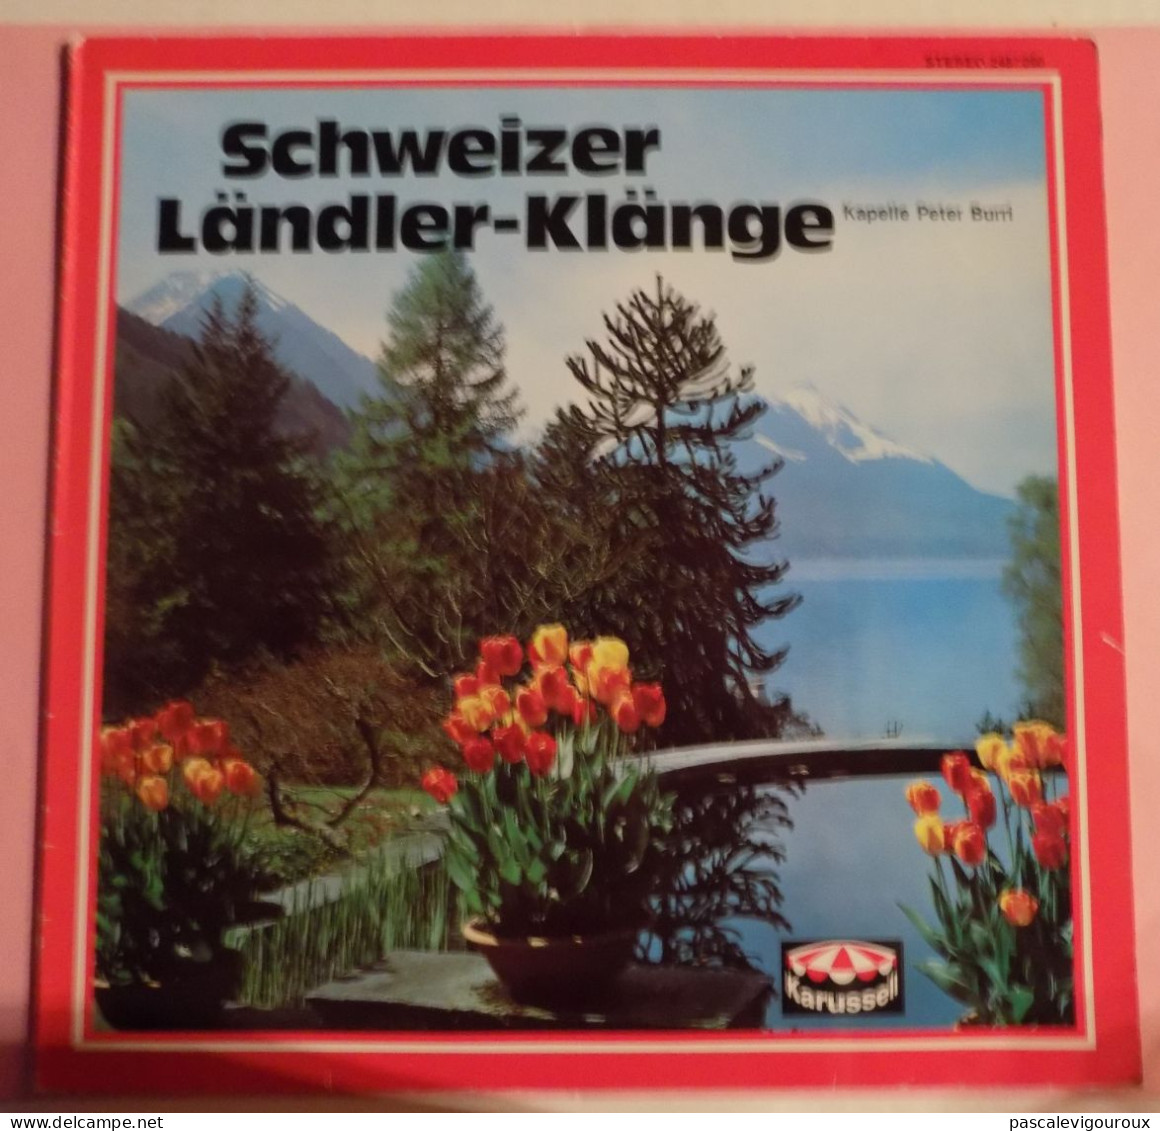 Kapelle Peter Burri ‎– Schweizer Ländler-Klänge - Country & Folk